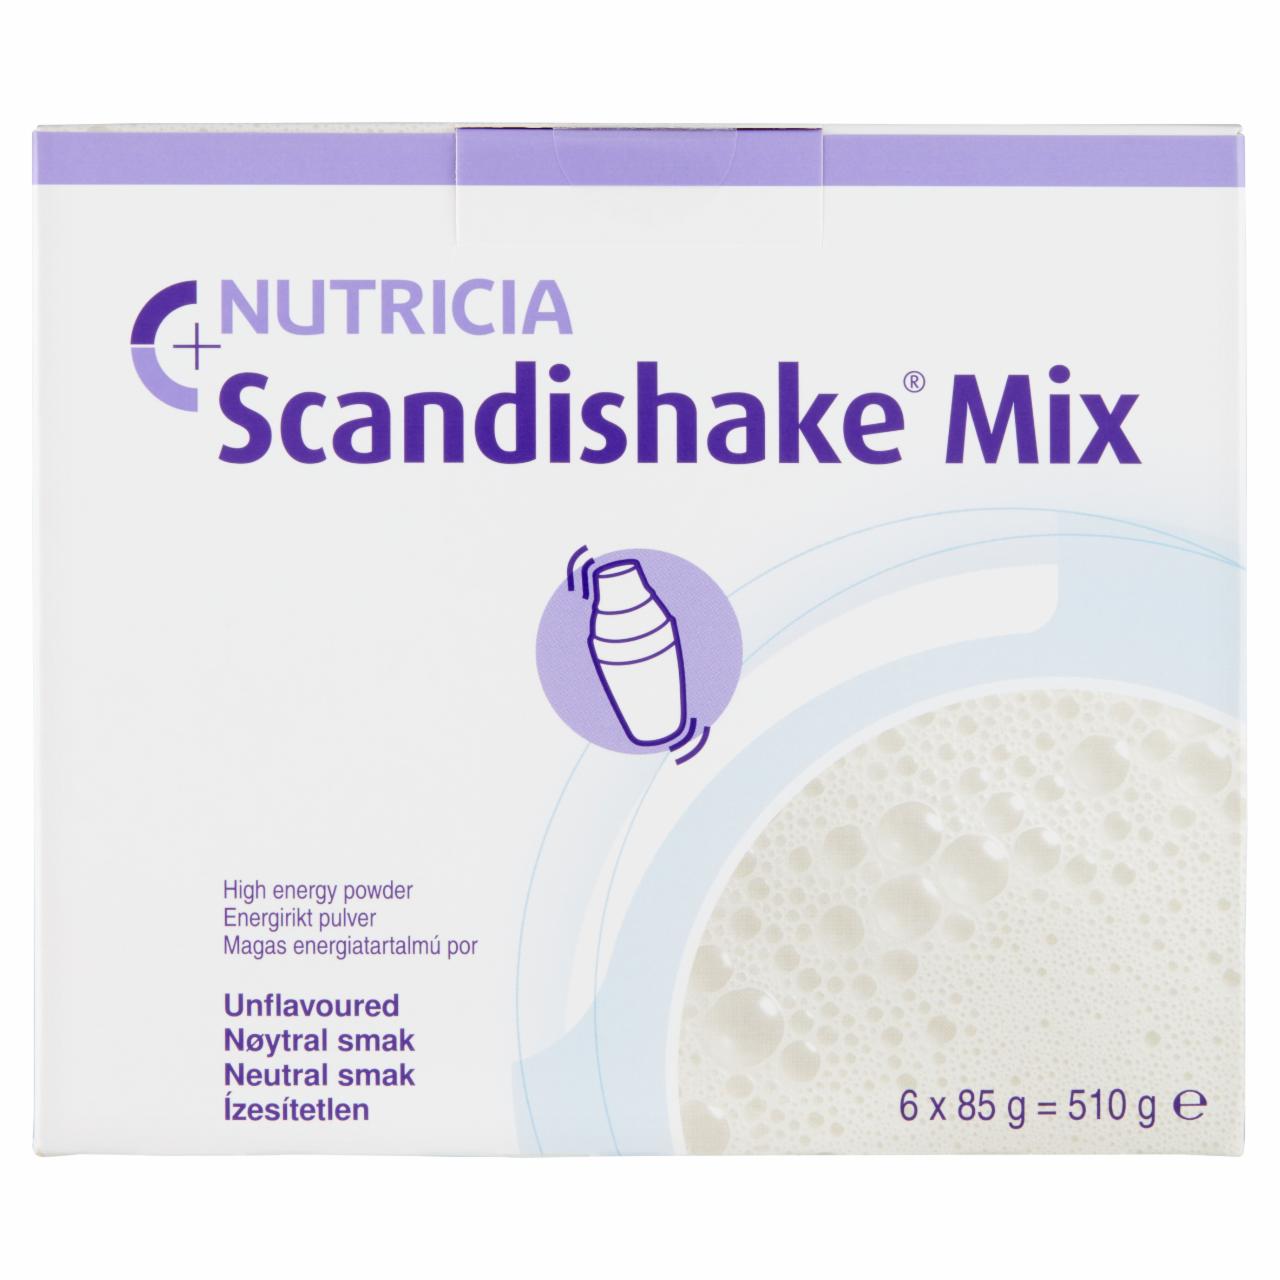 Képek - Nutricia Scandishake Mix ízesítetlen magas energiatartalmú por 6 x 85 g (510 g)